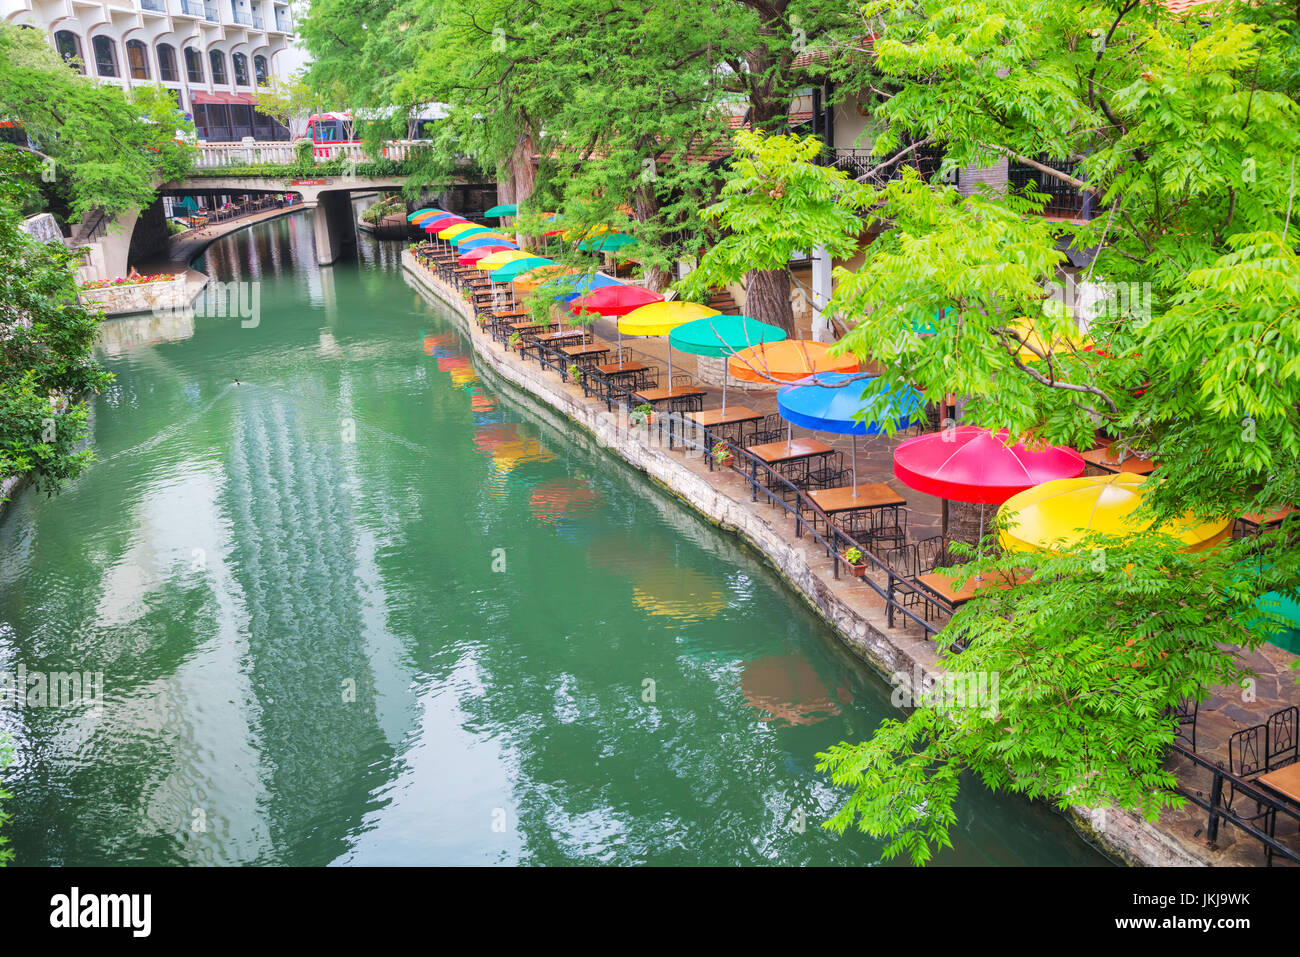 River walk in San Antonio in the morning Stock Photo